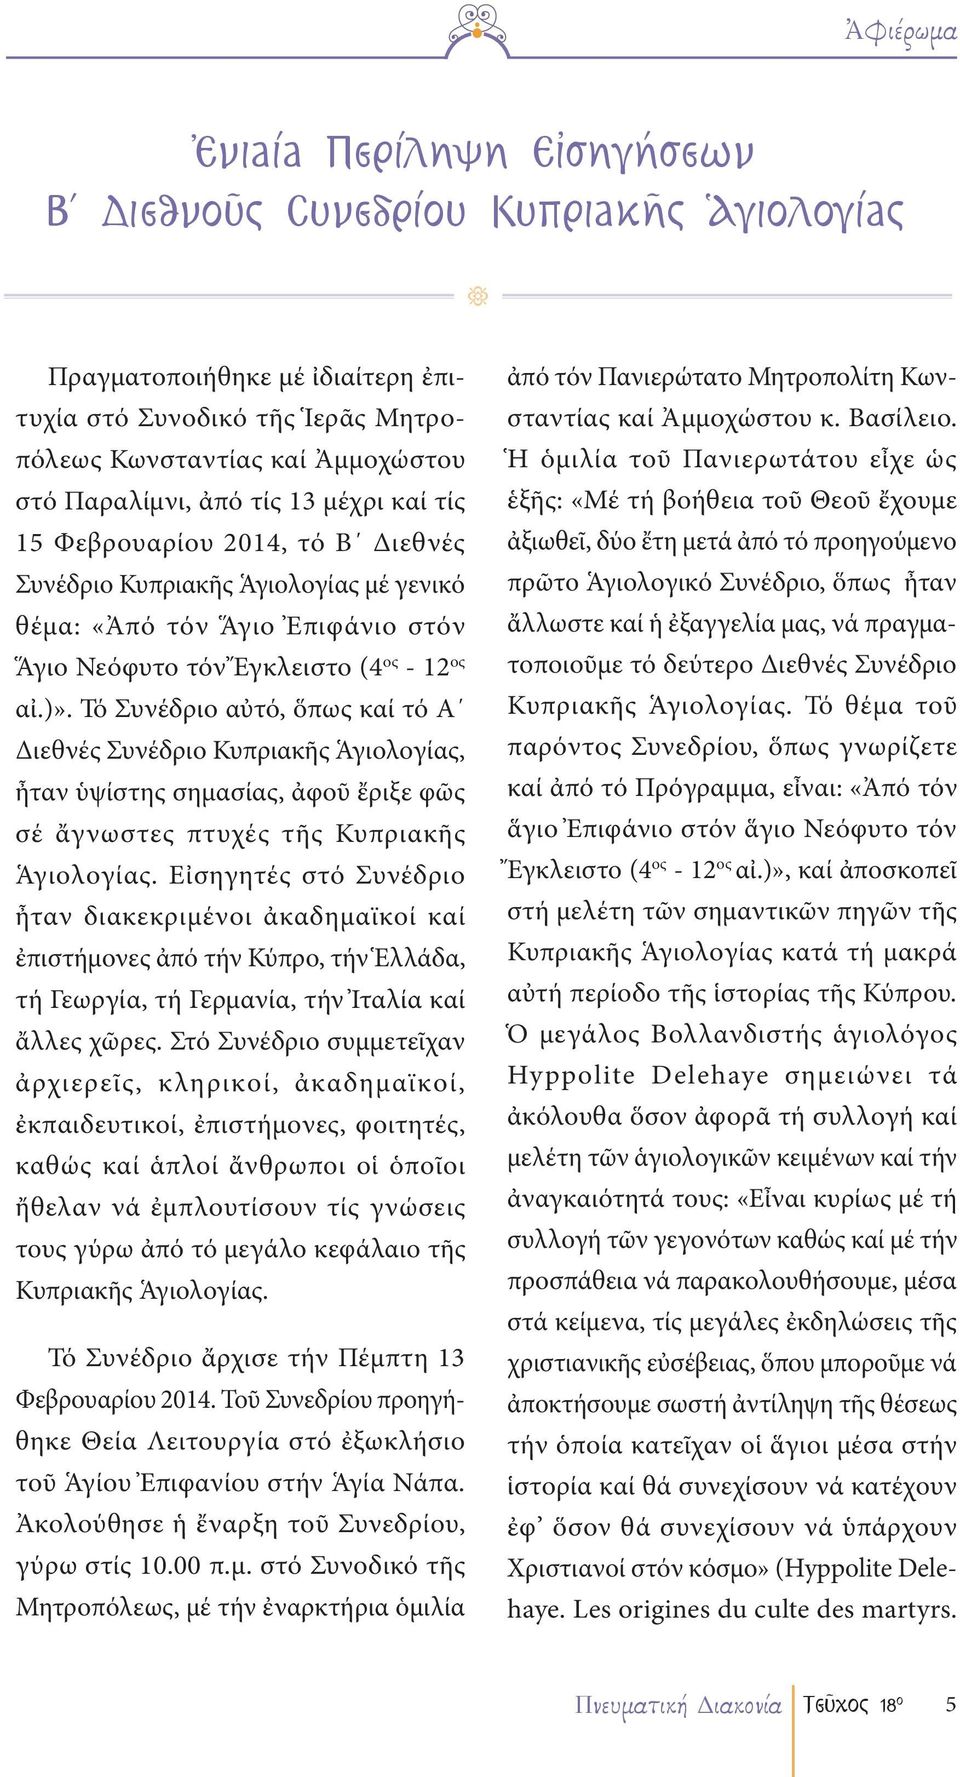 Τό Συνέδριο αὐτό, ὅπως καί τό Α Διεθνές Συνέδριο Κυπριακῆς Ἁγιολογίας, ἦταν ὑψίστης σημασίας, ἀφοῦ ἔριξε φῶς σέ ἄγνωστες πτυχές τῆς Κυπριακῆς Ἁγιολογίας.